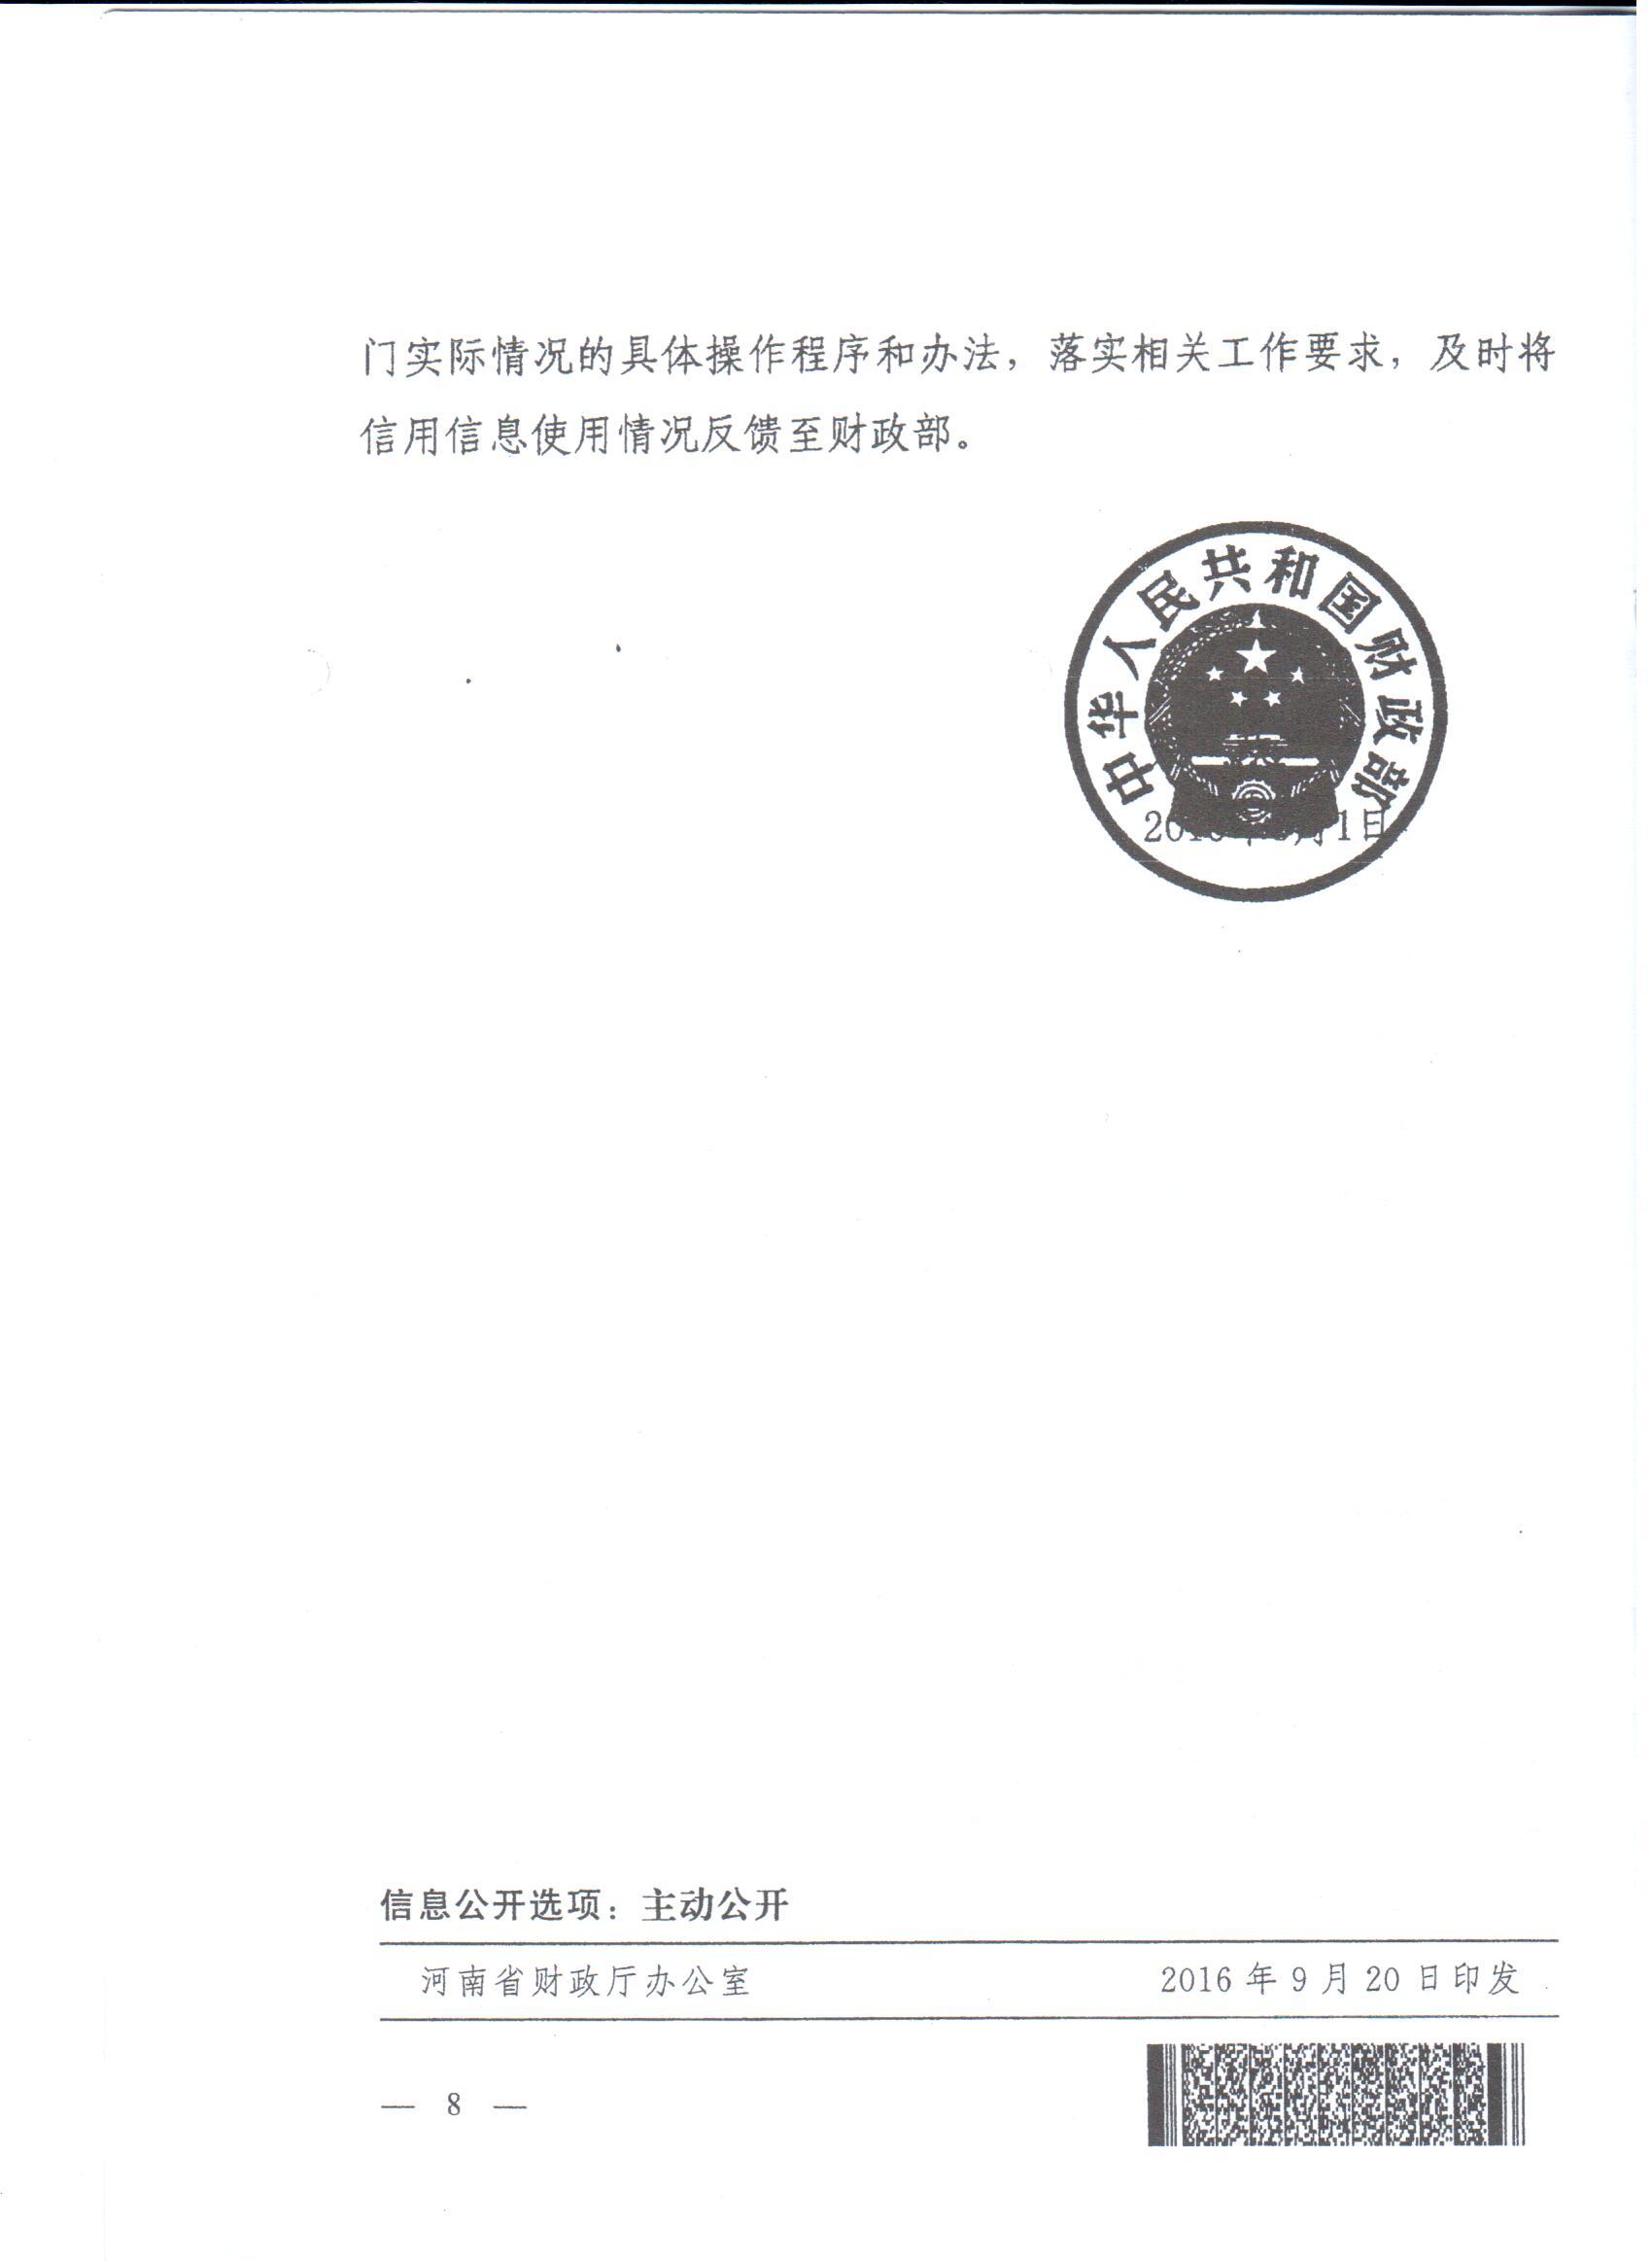 河南省财政厅转发财政部关于在政府采购活动中查询及使用信用记录有关问题的通知的通知(图8)